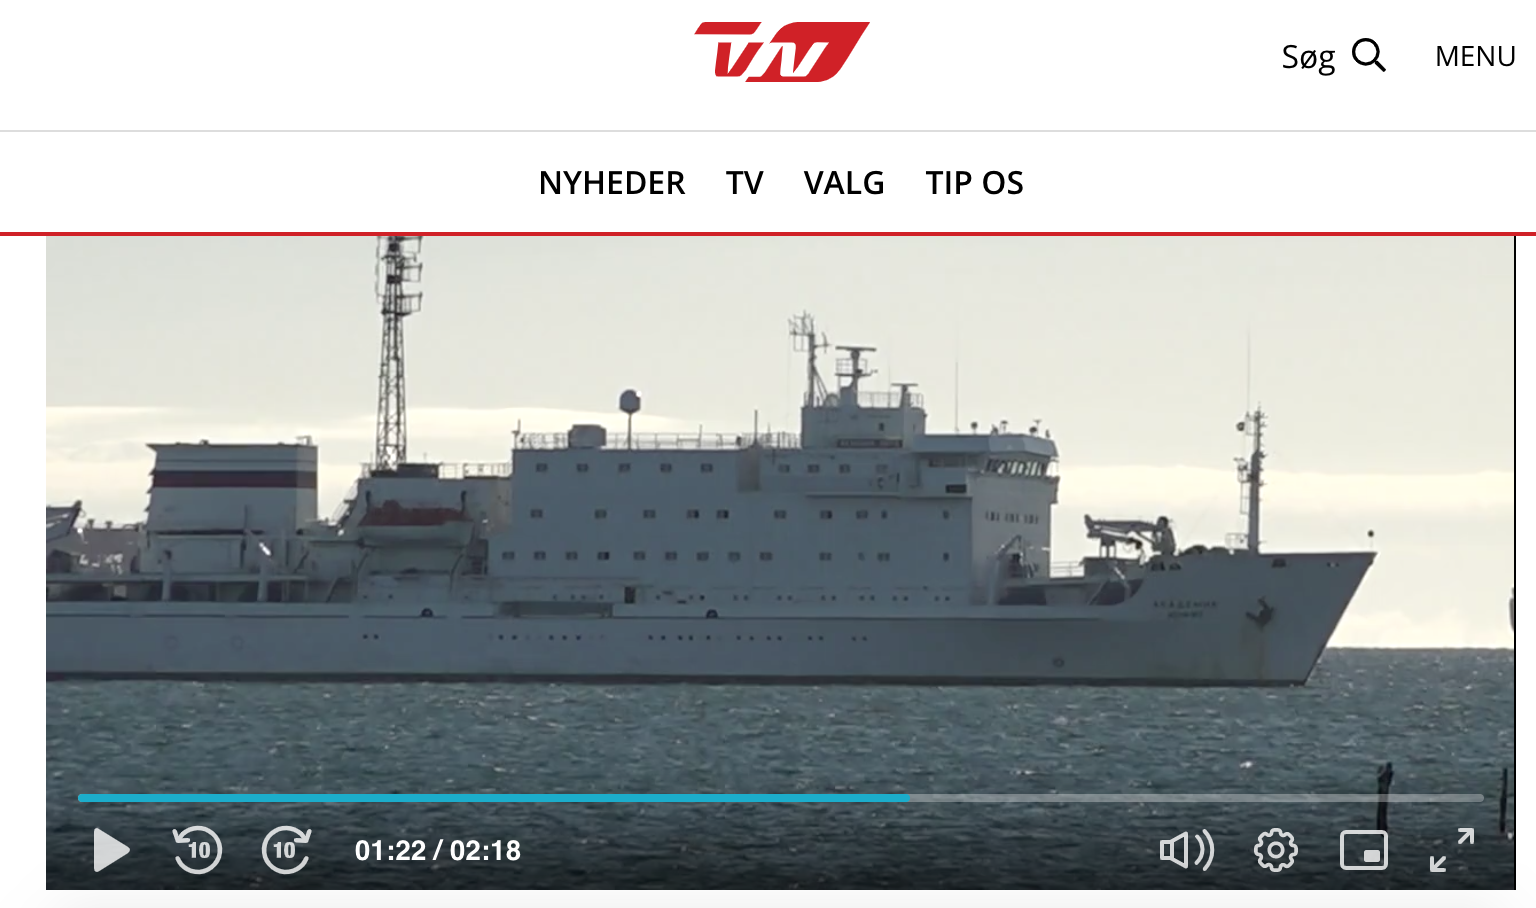 Требование денежной компенсации из Канады привело к аресту судна РФ в Дании - СМИ